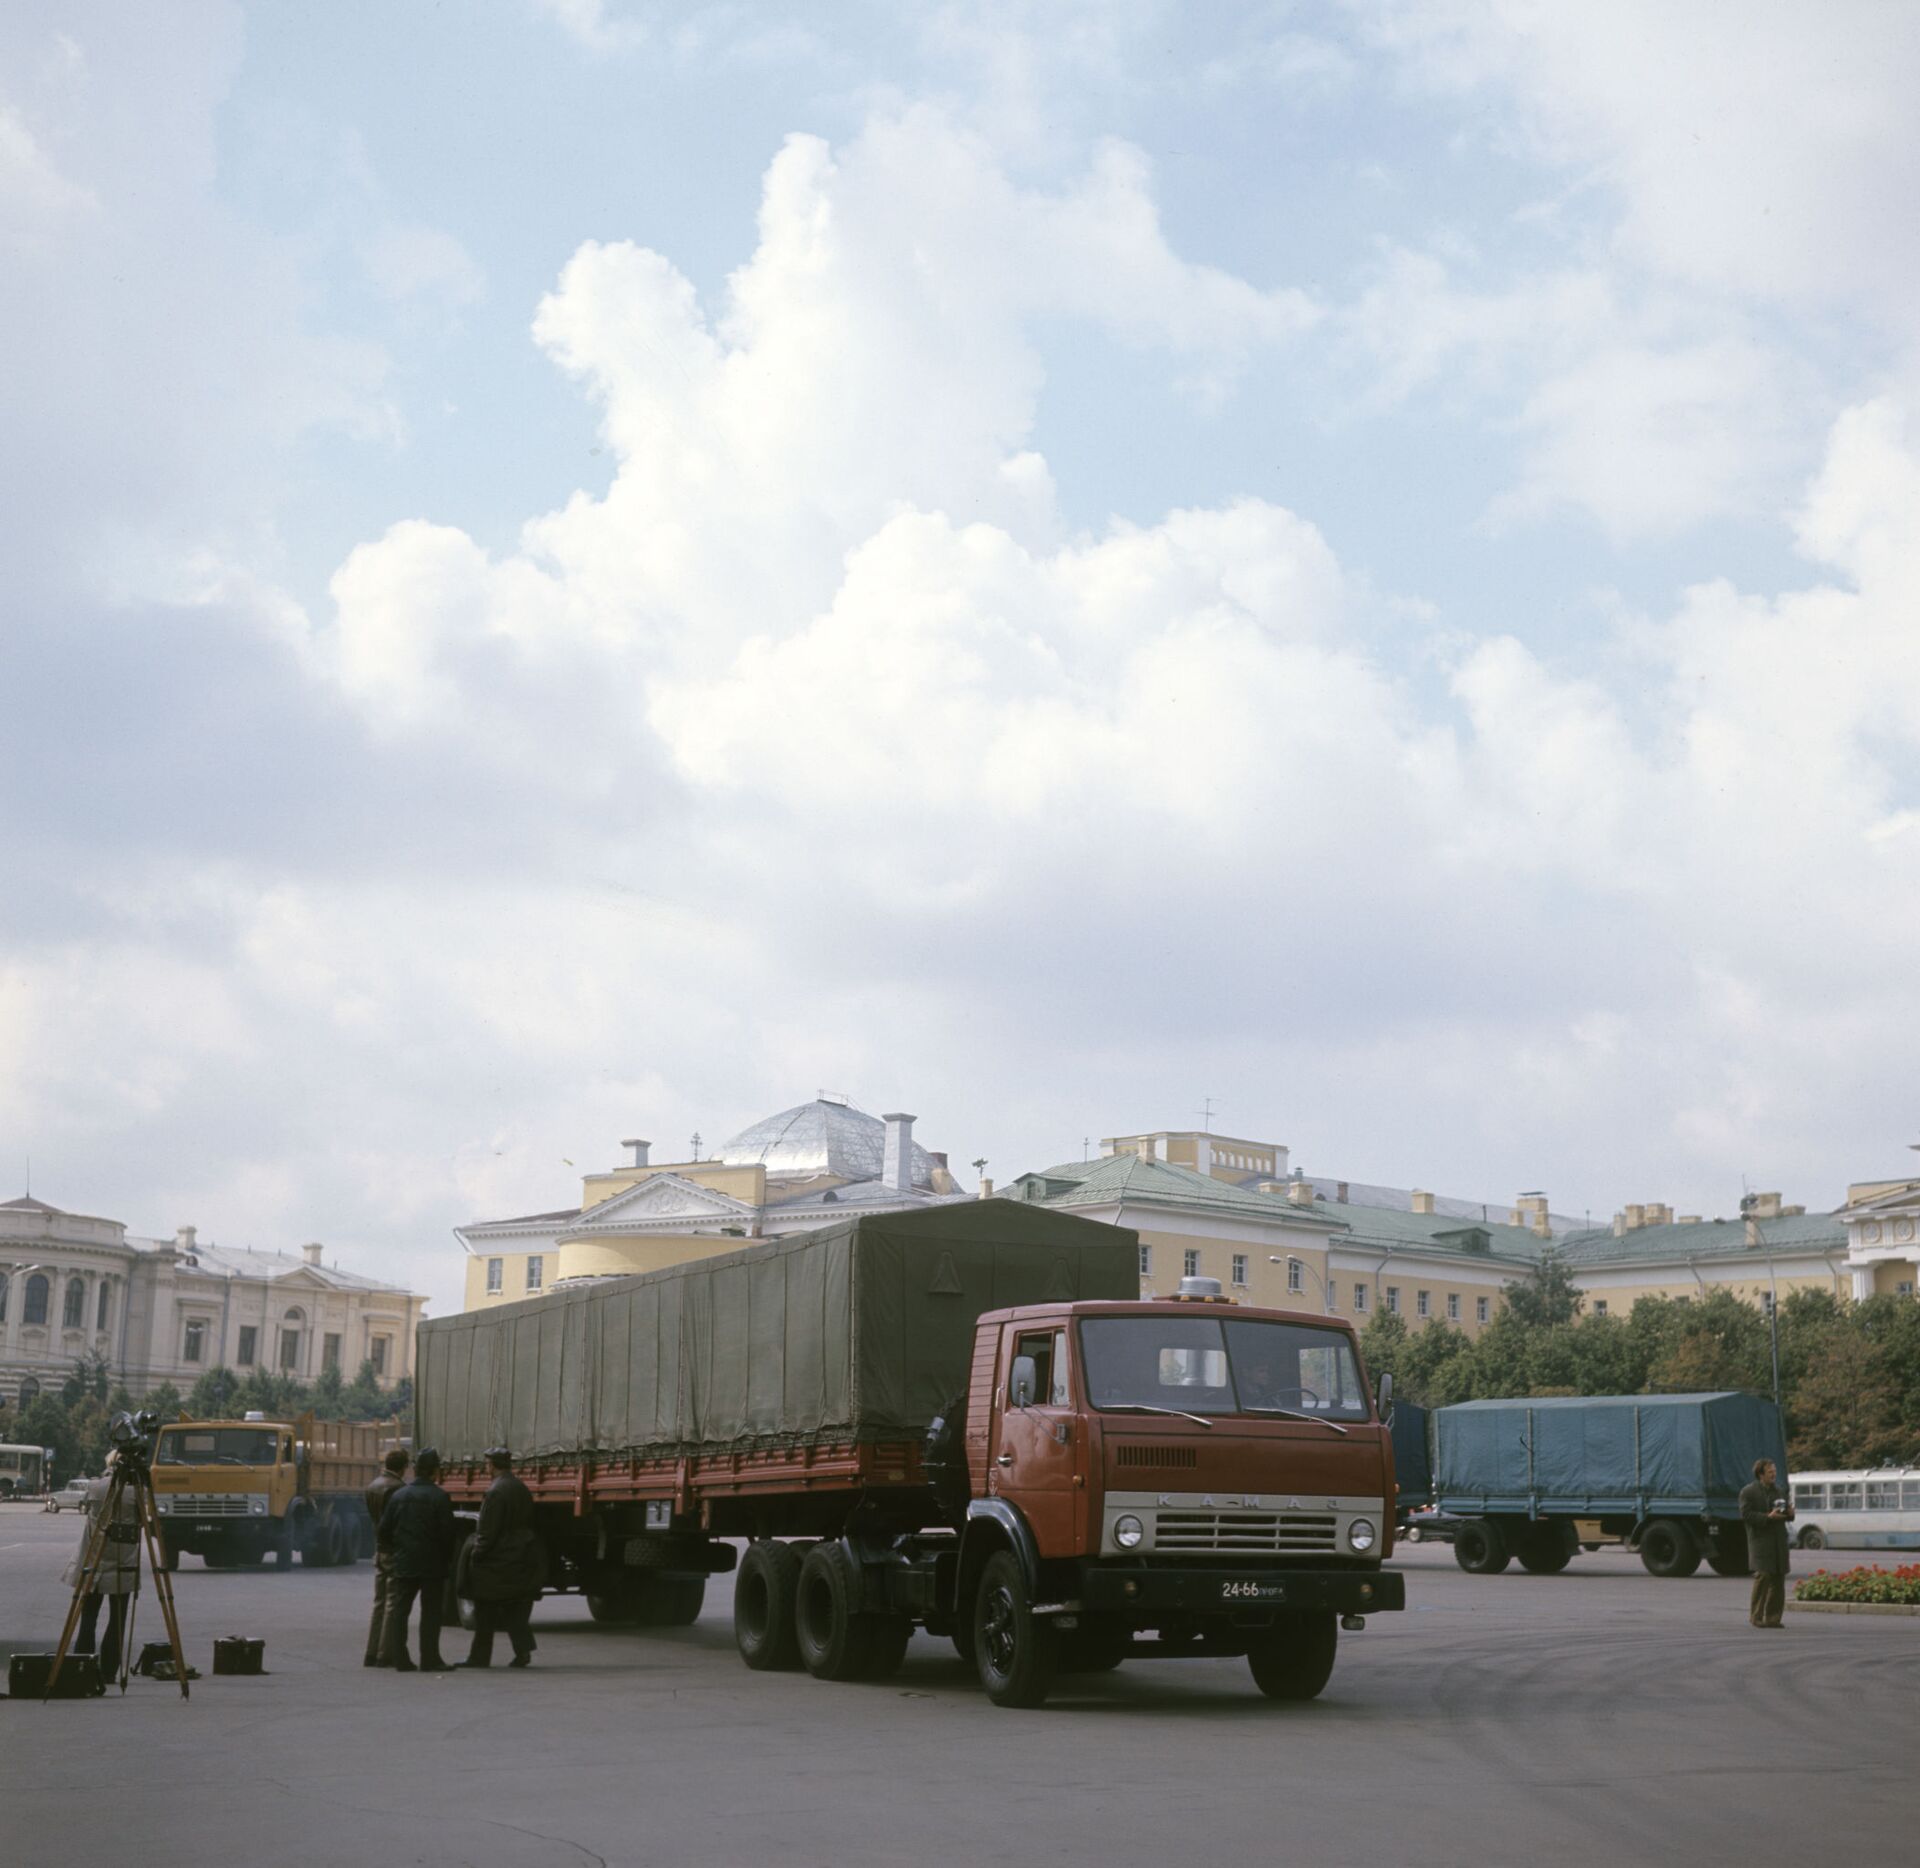 Vienkārši un uzticami: Krievijas kravas automašīnas, kas iekarojušas pusi pasaules - Sputnik Latvija, 1920, 17.02.2021